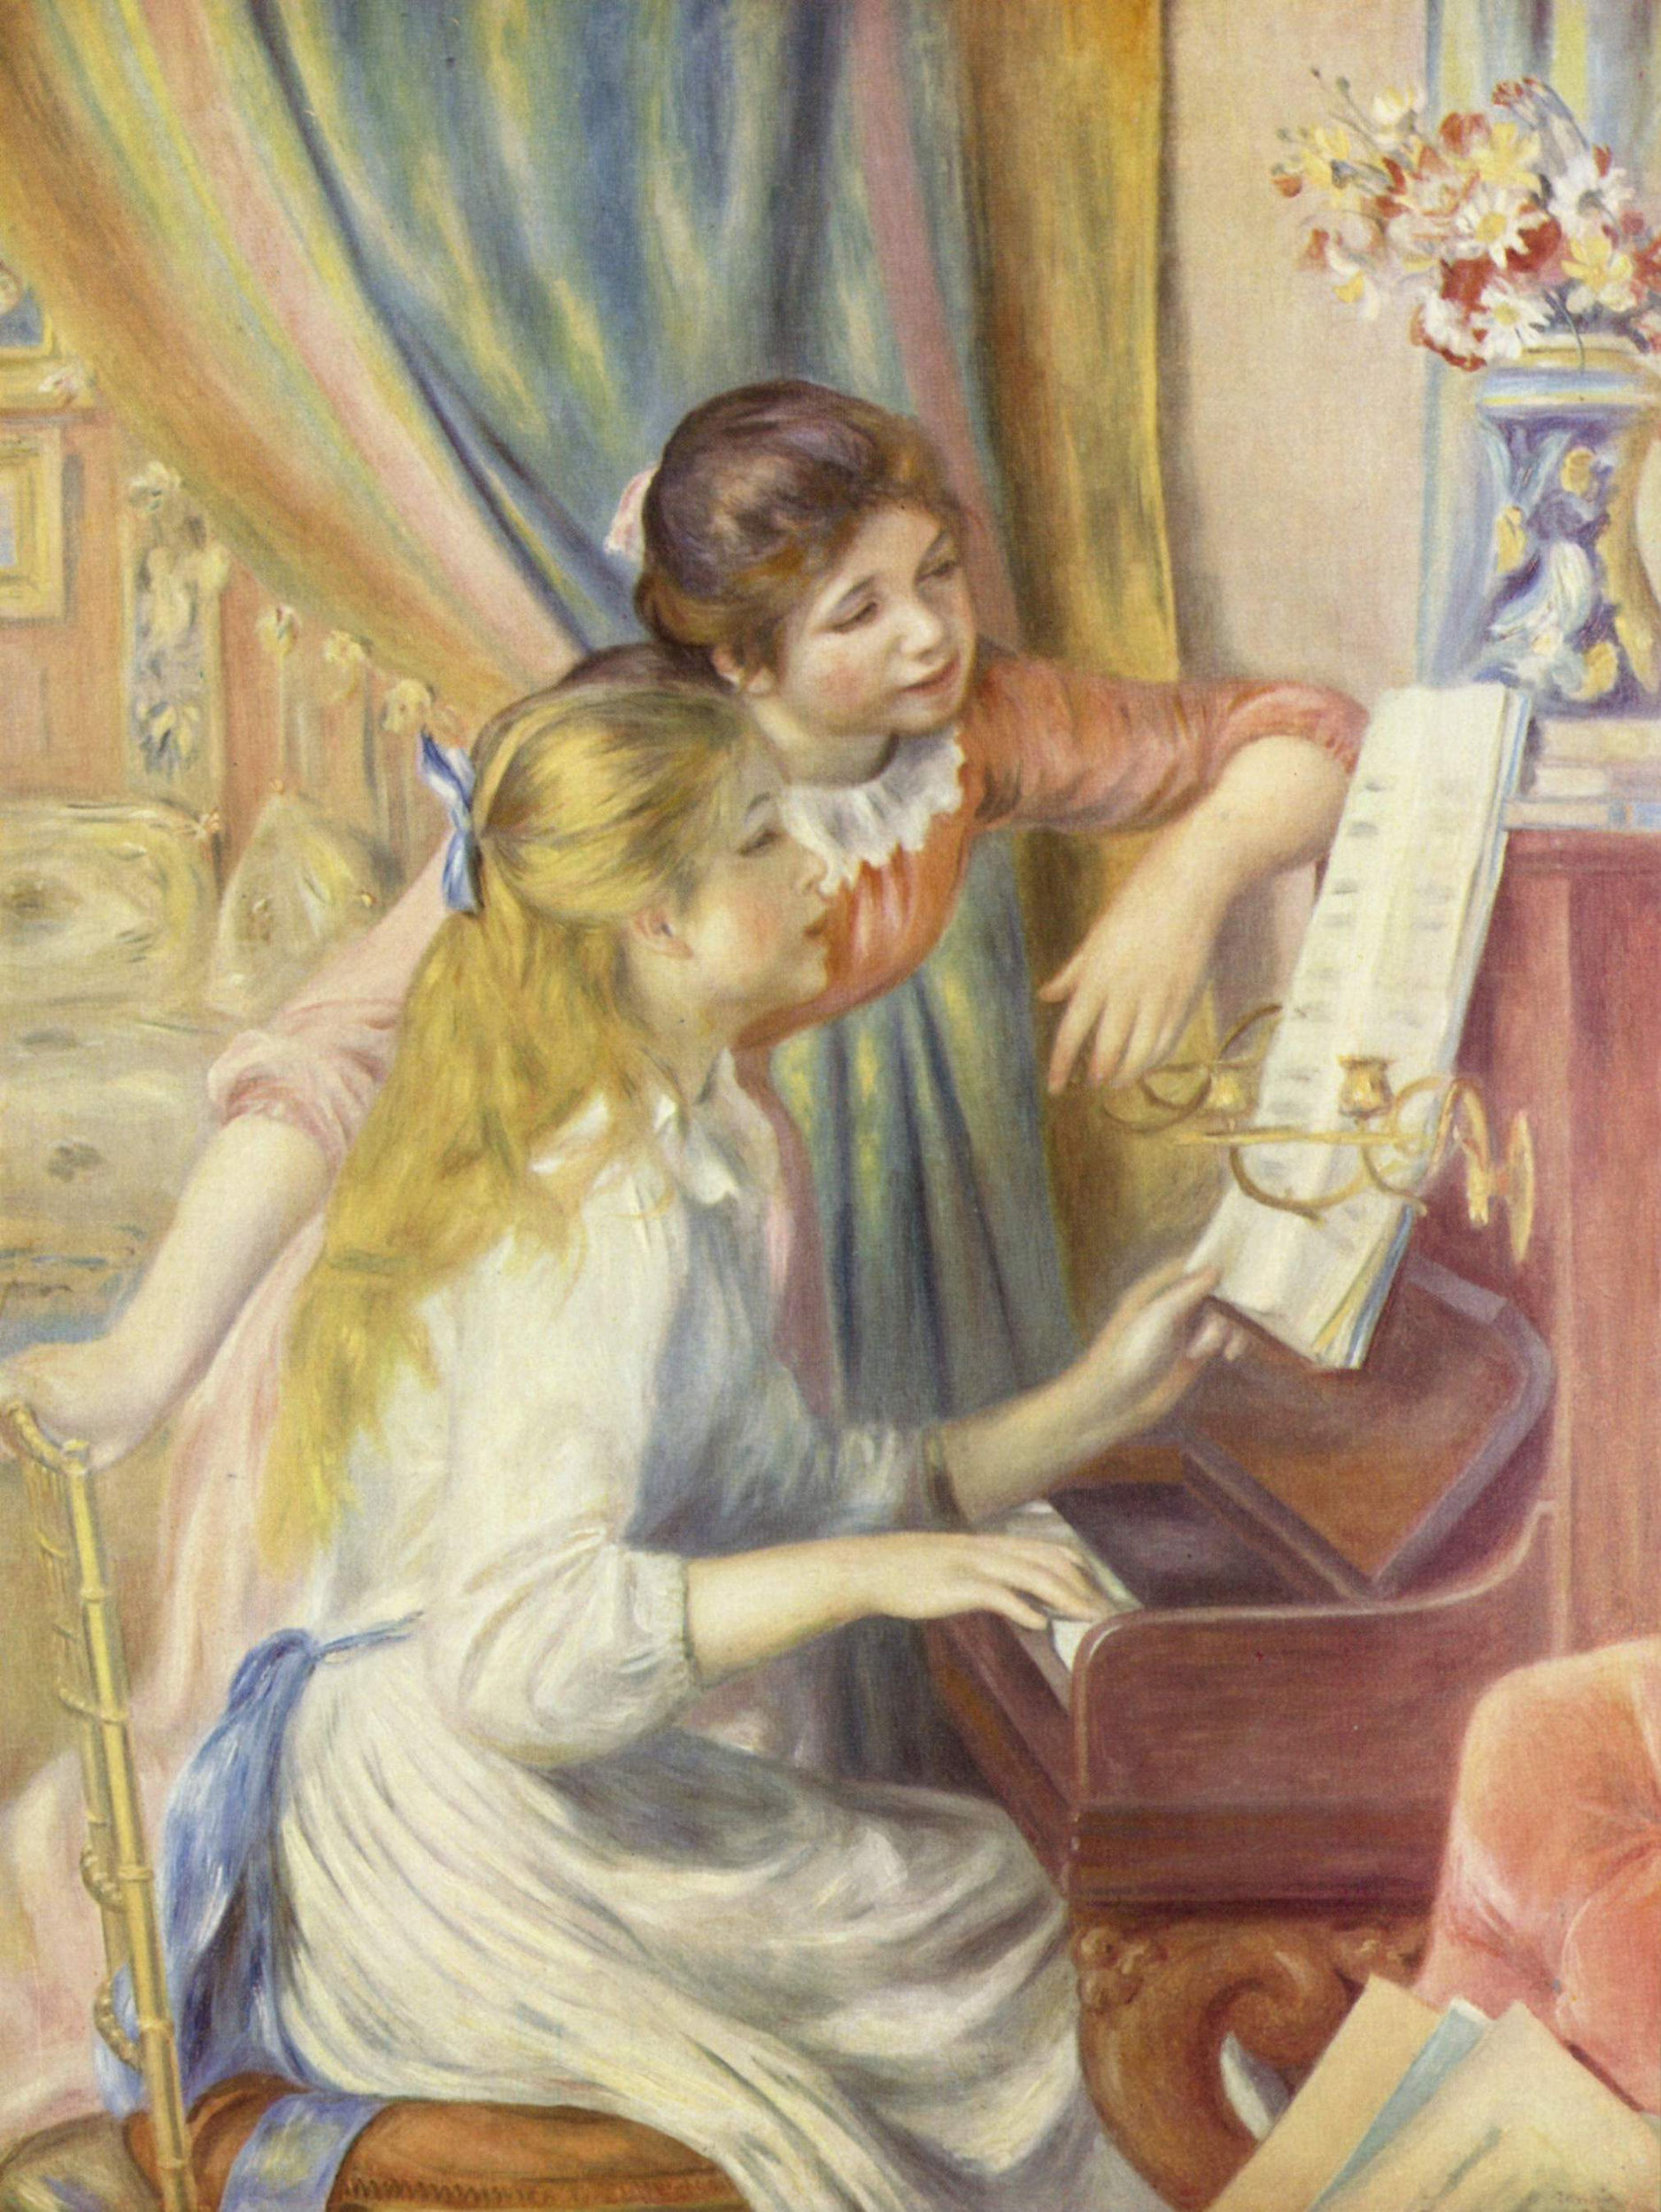 Piere - Auguste Renoir "Jeunes filles au piano" 1892, olio su tela, cm 116x90. Musée d'Orsay, Parigi.